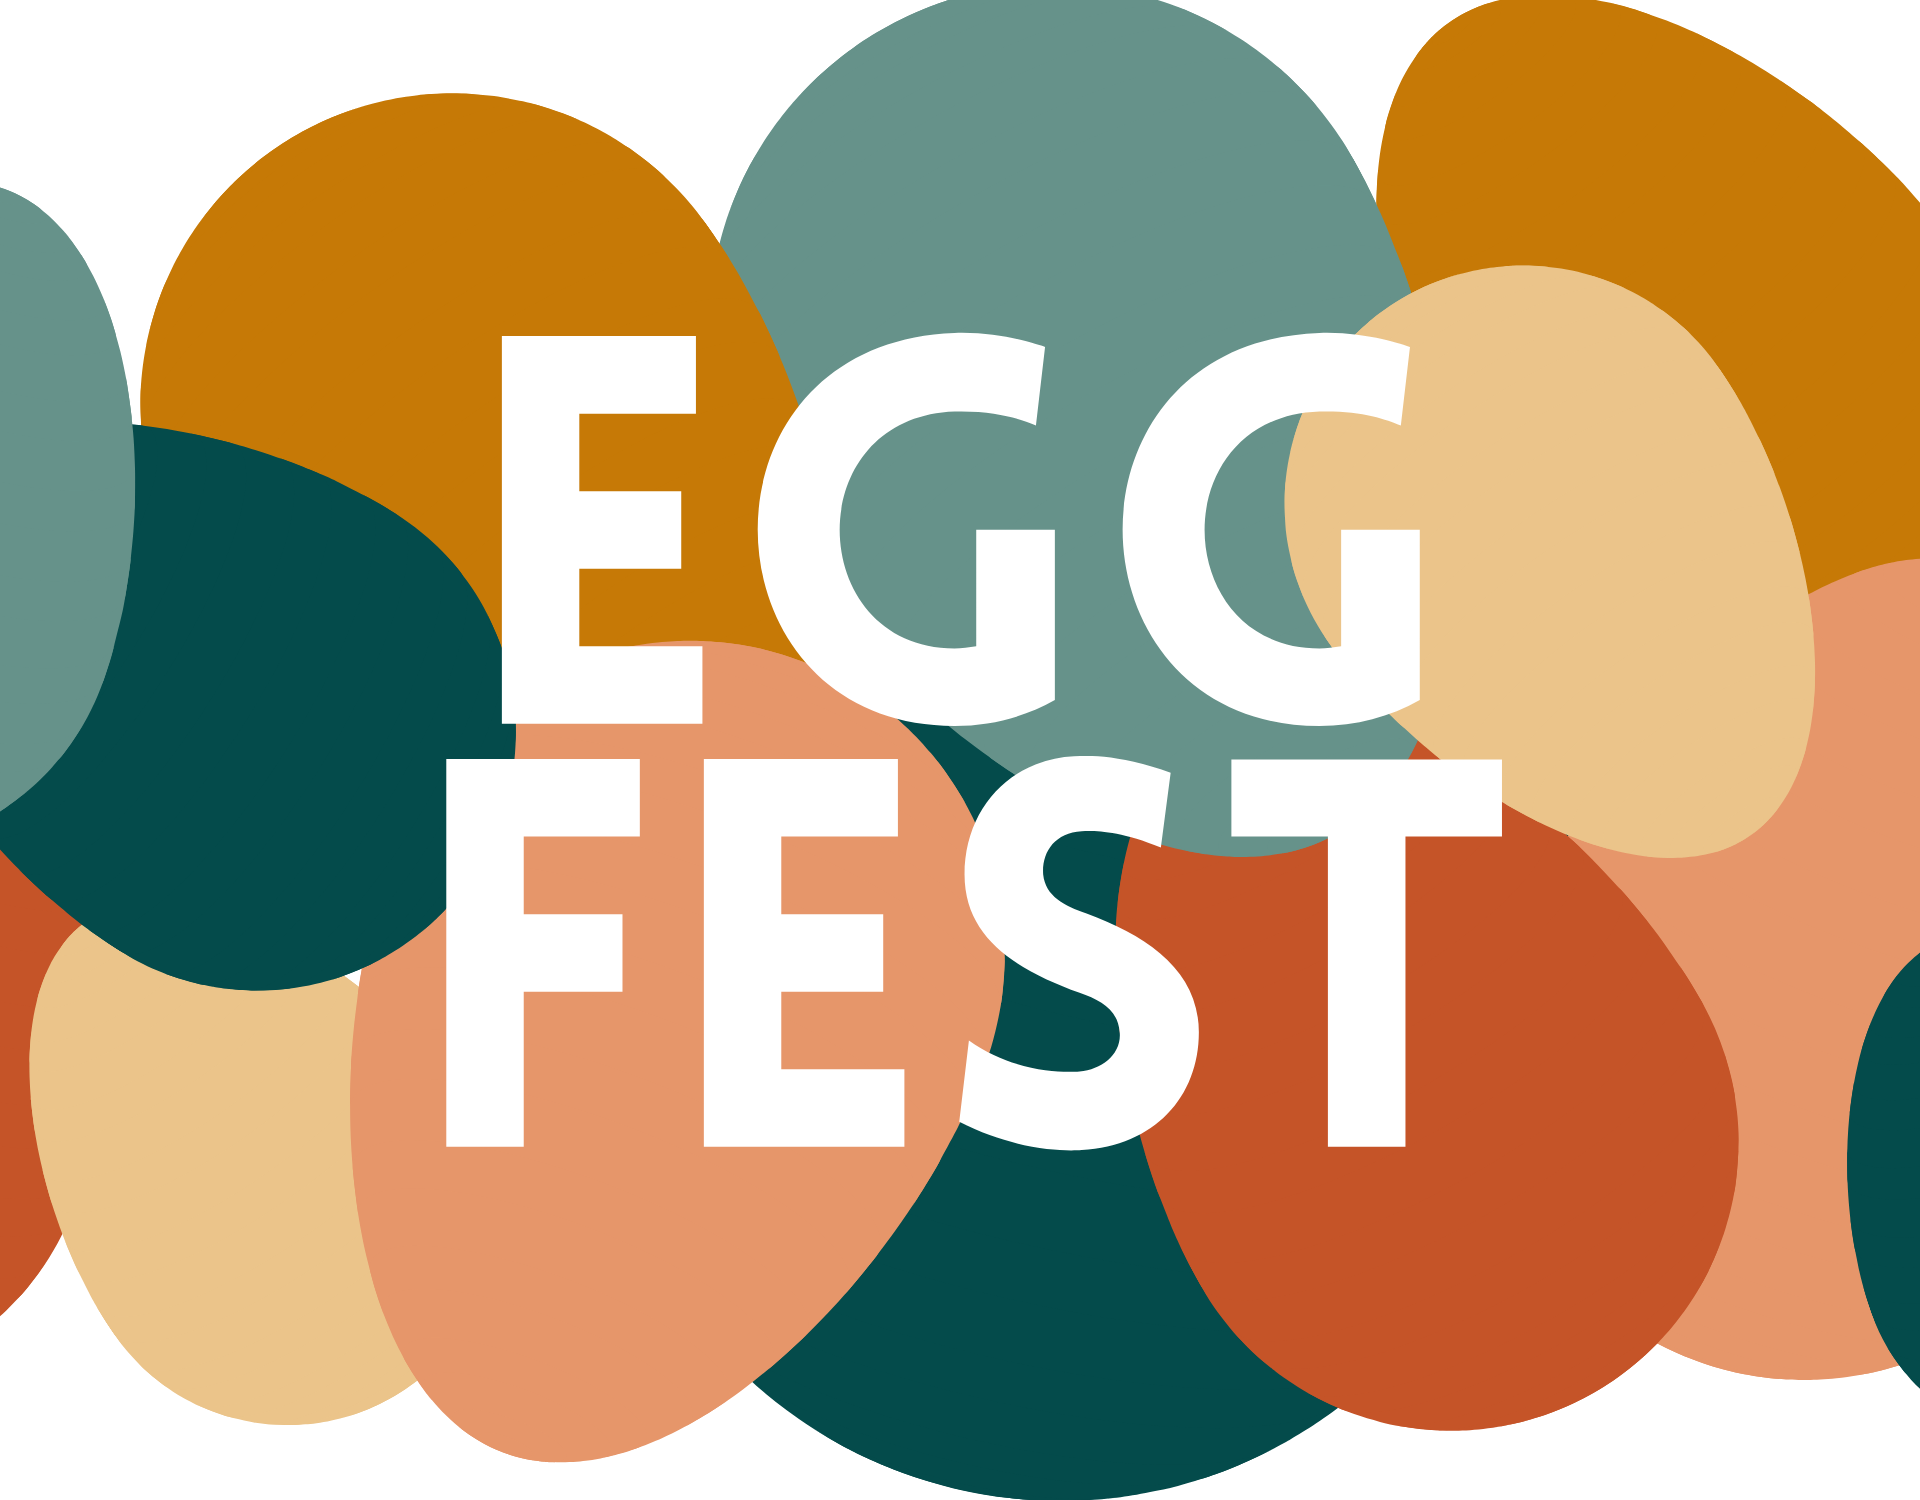 egg fest image